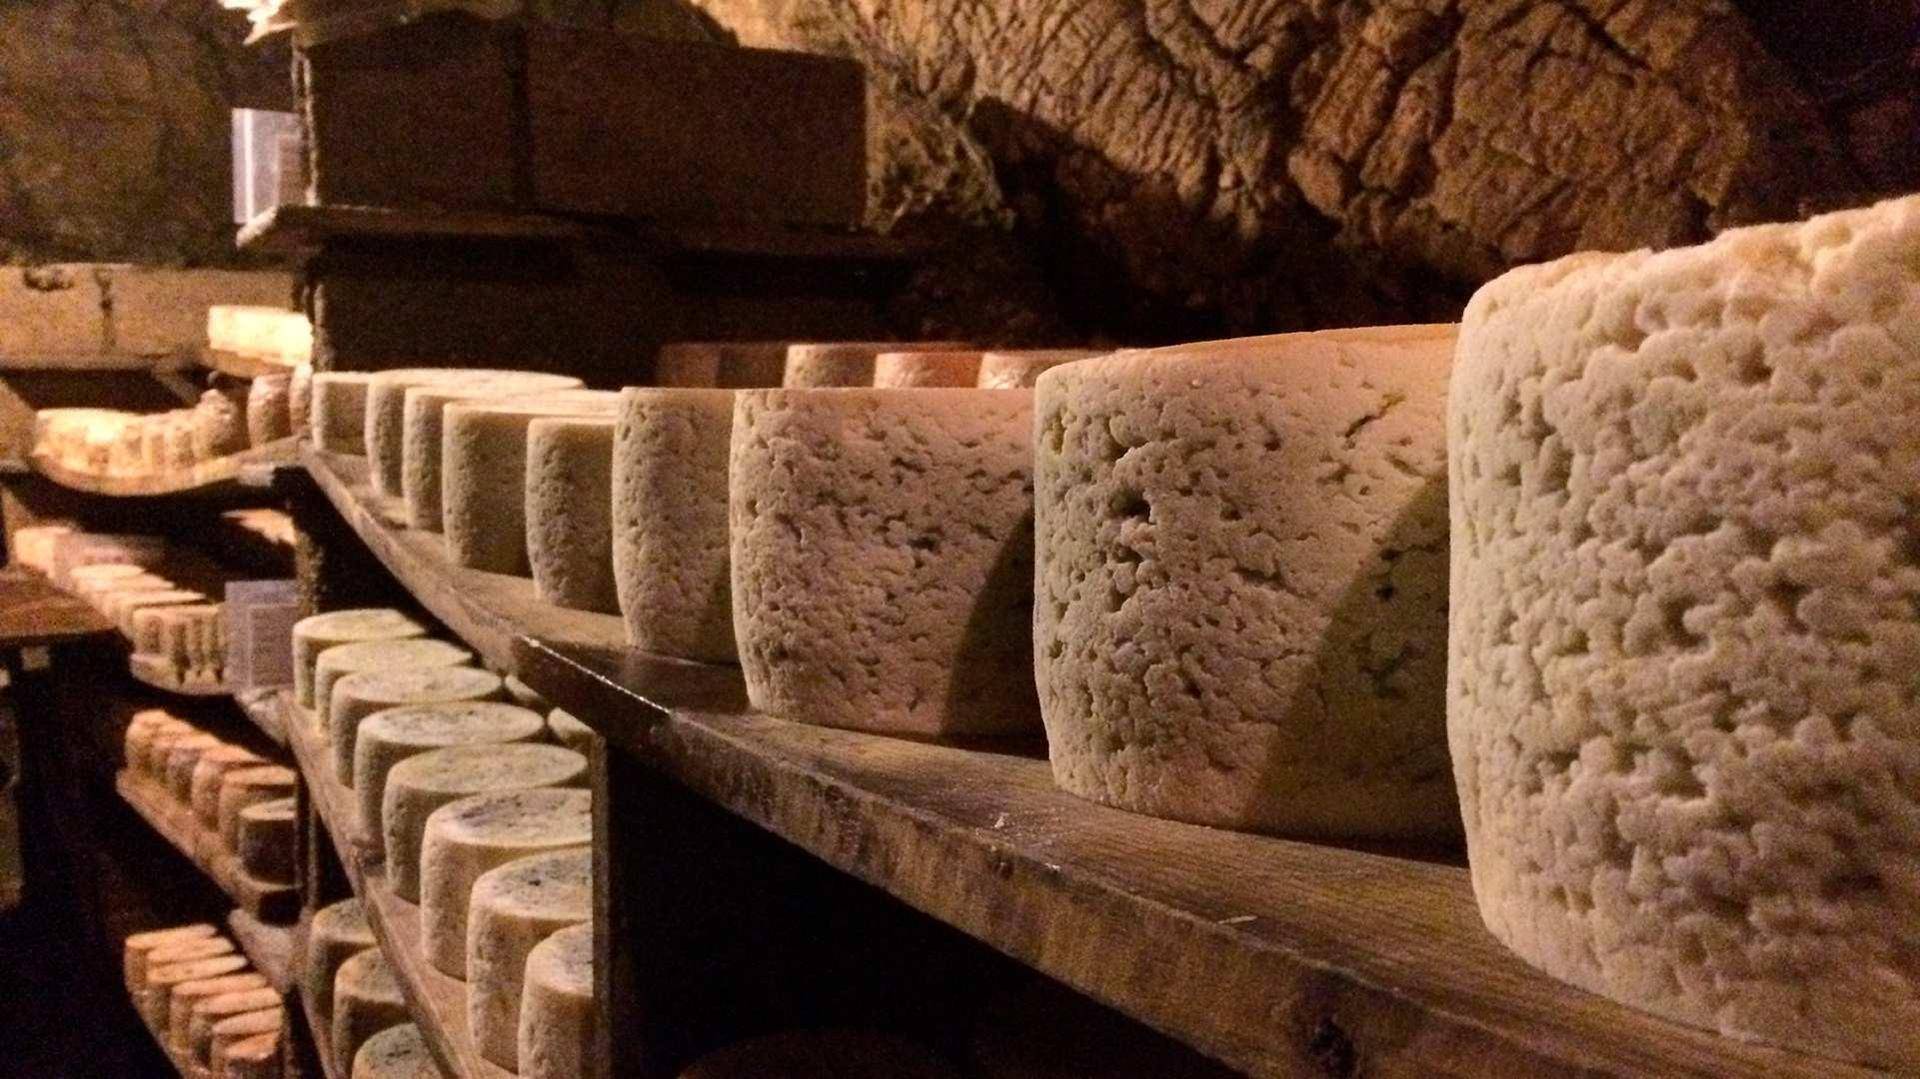 Los quesos de Cabrales maduran sobre tablas de madera en las cuevas. Cueva Exposición del Cabrales. Foto: ©Turismo de Asturias